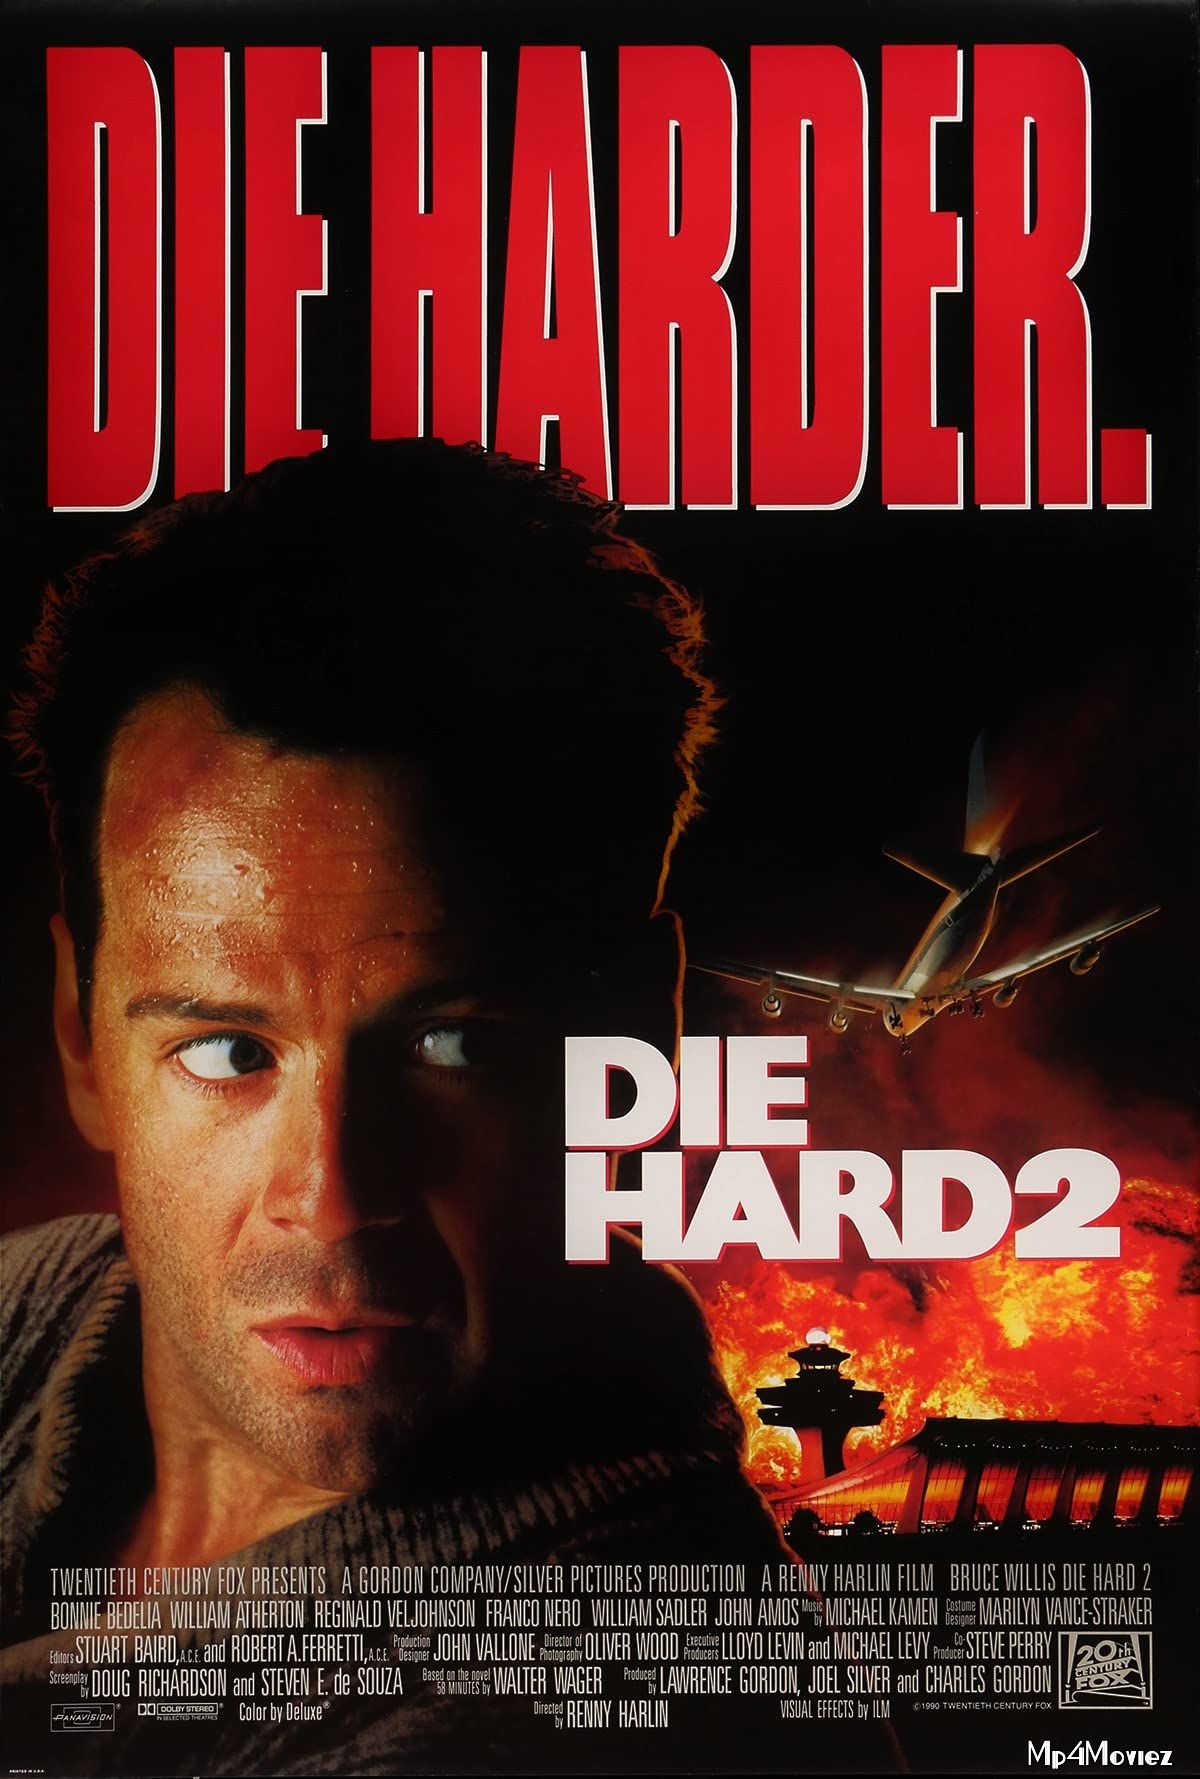 Die Hard 2 (1990) Hindi Dubbed Movie download full movie